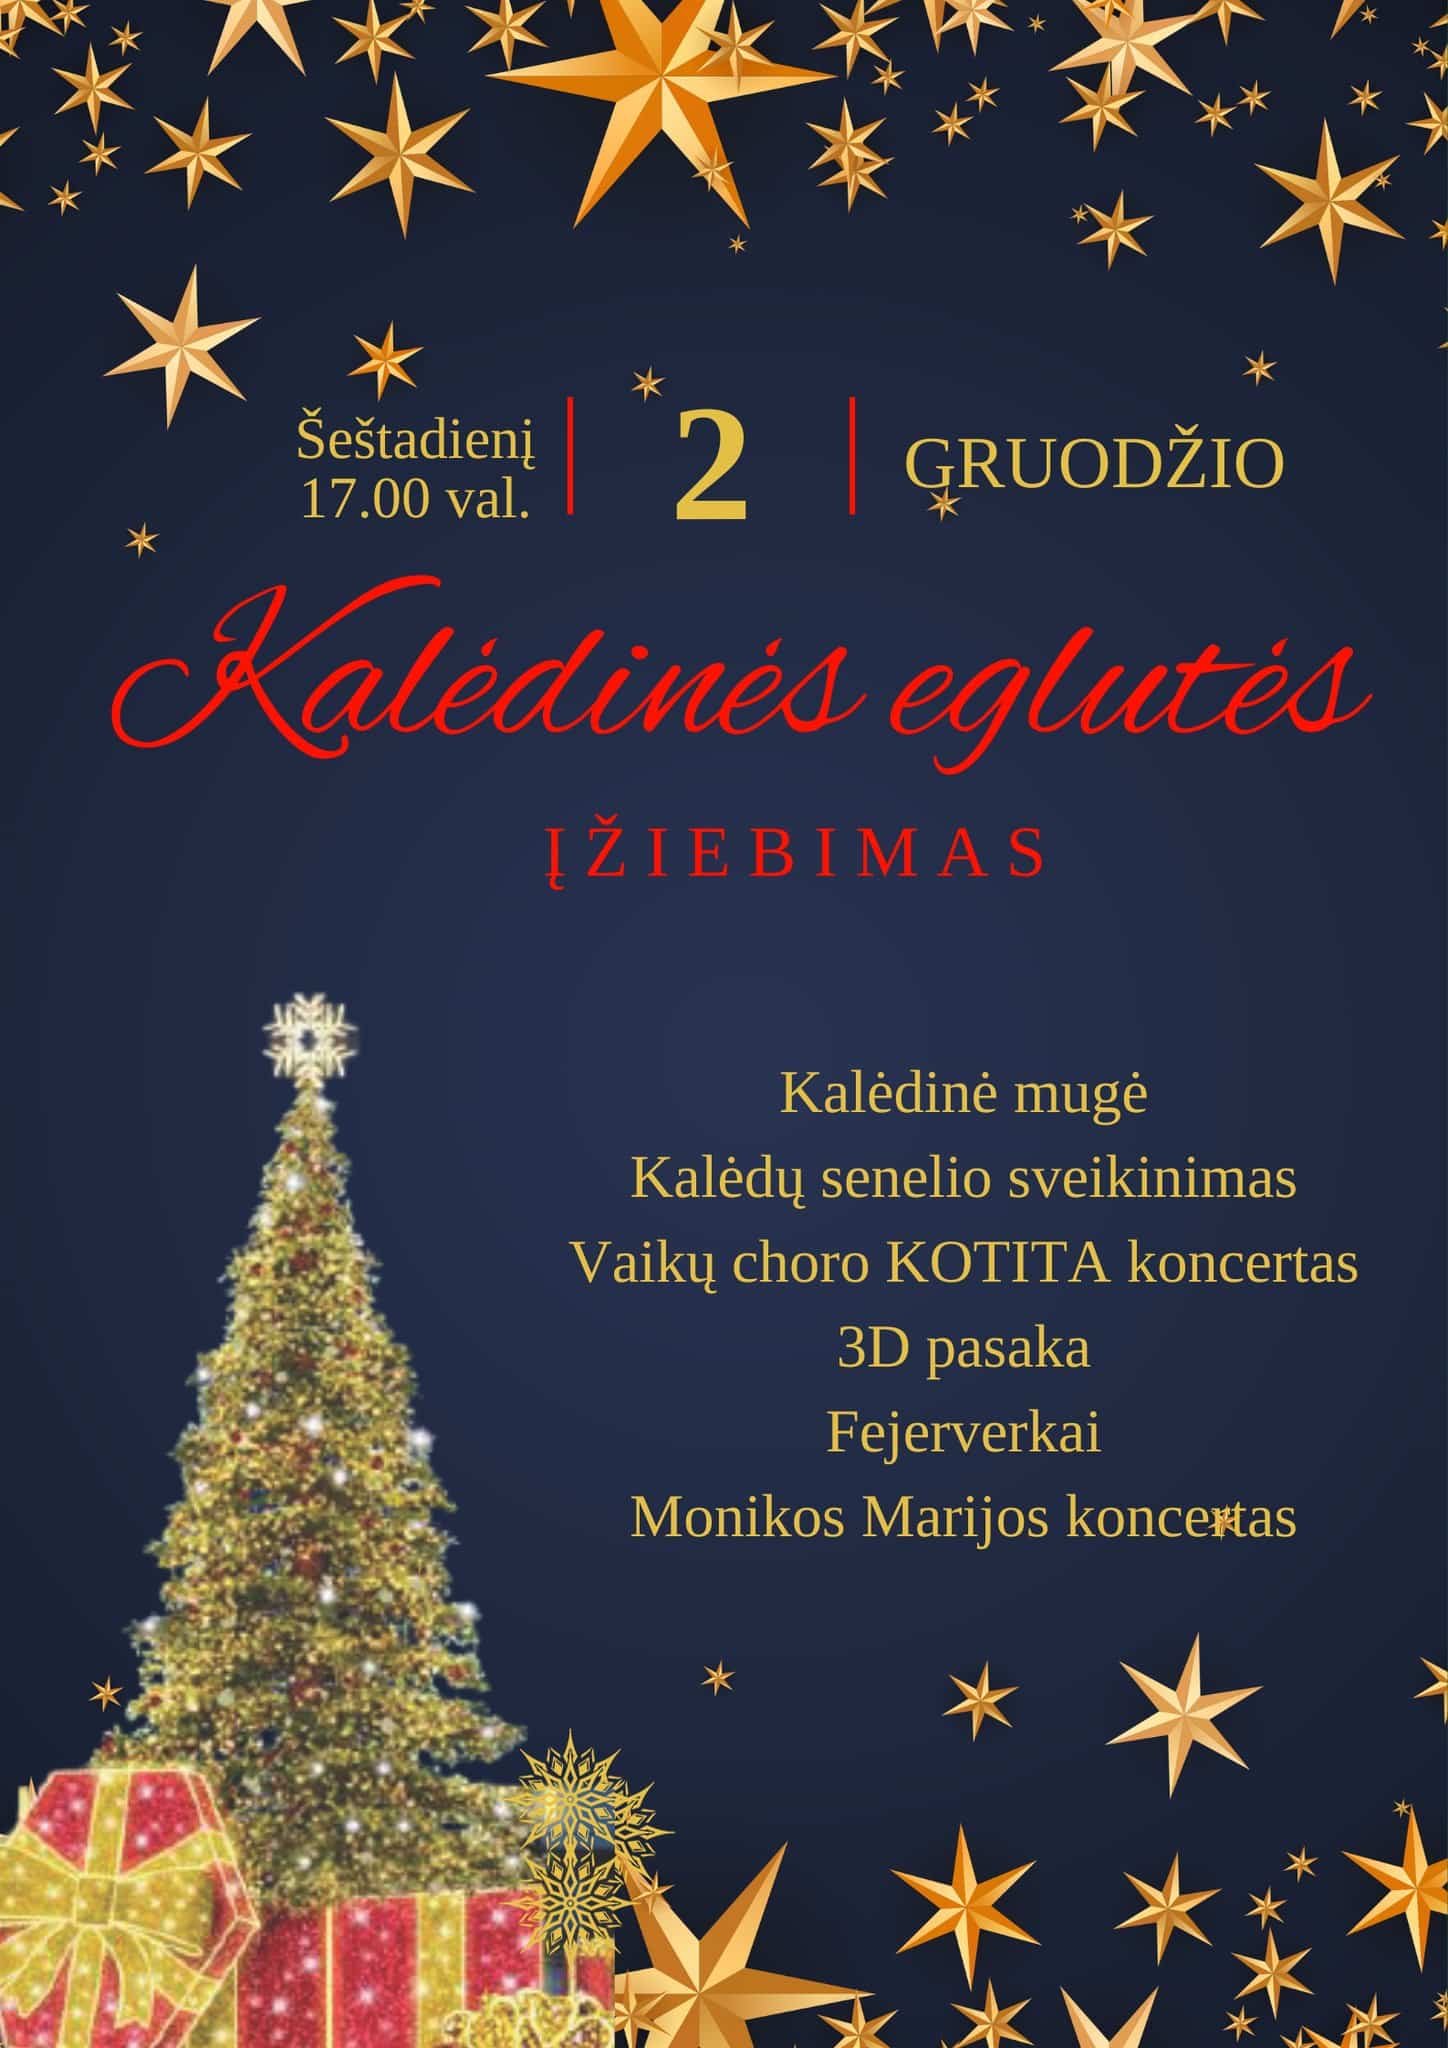 You are currently viewing Marijampolės kalėdinės eglės įžiebimo šventė